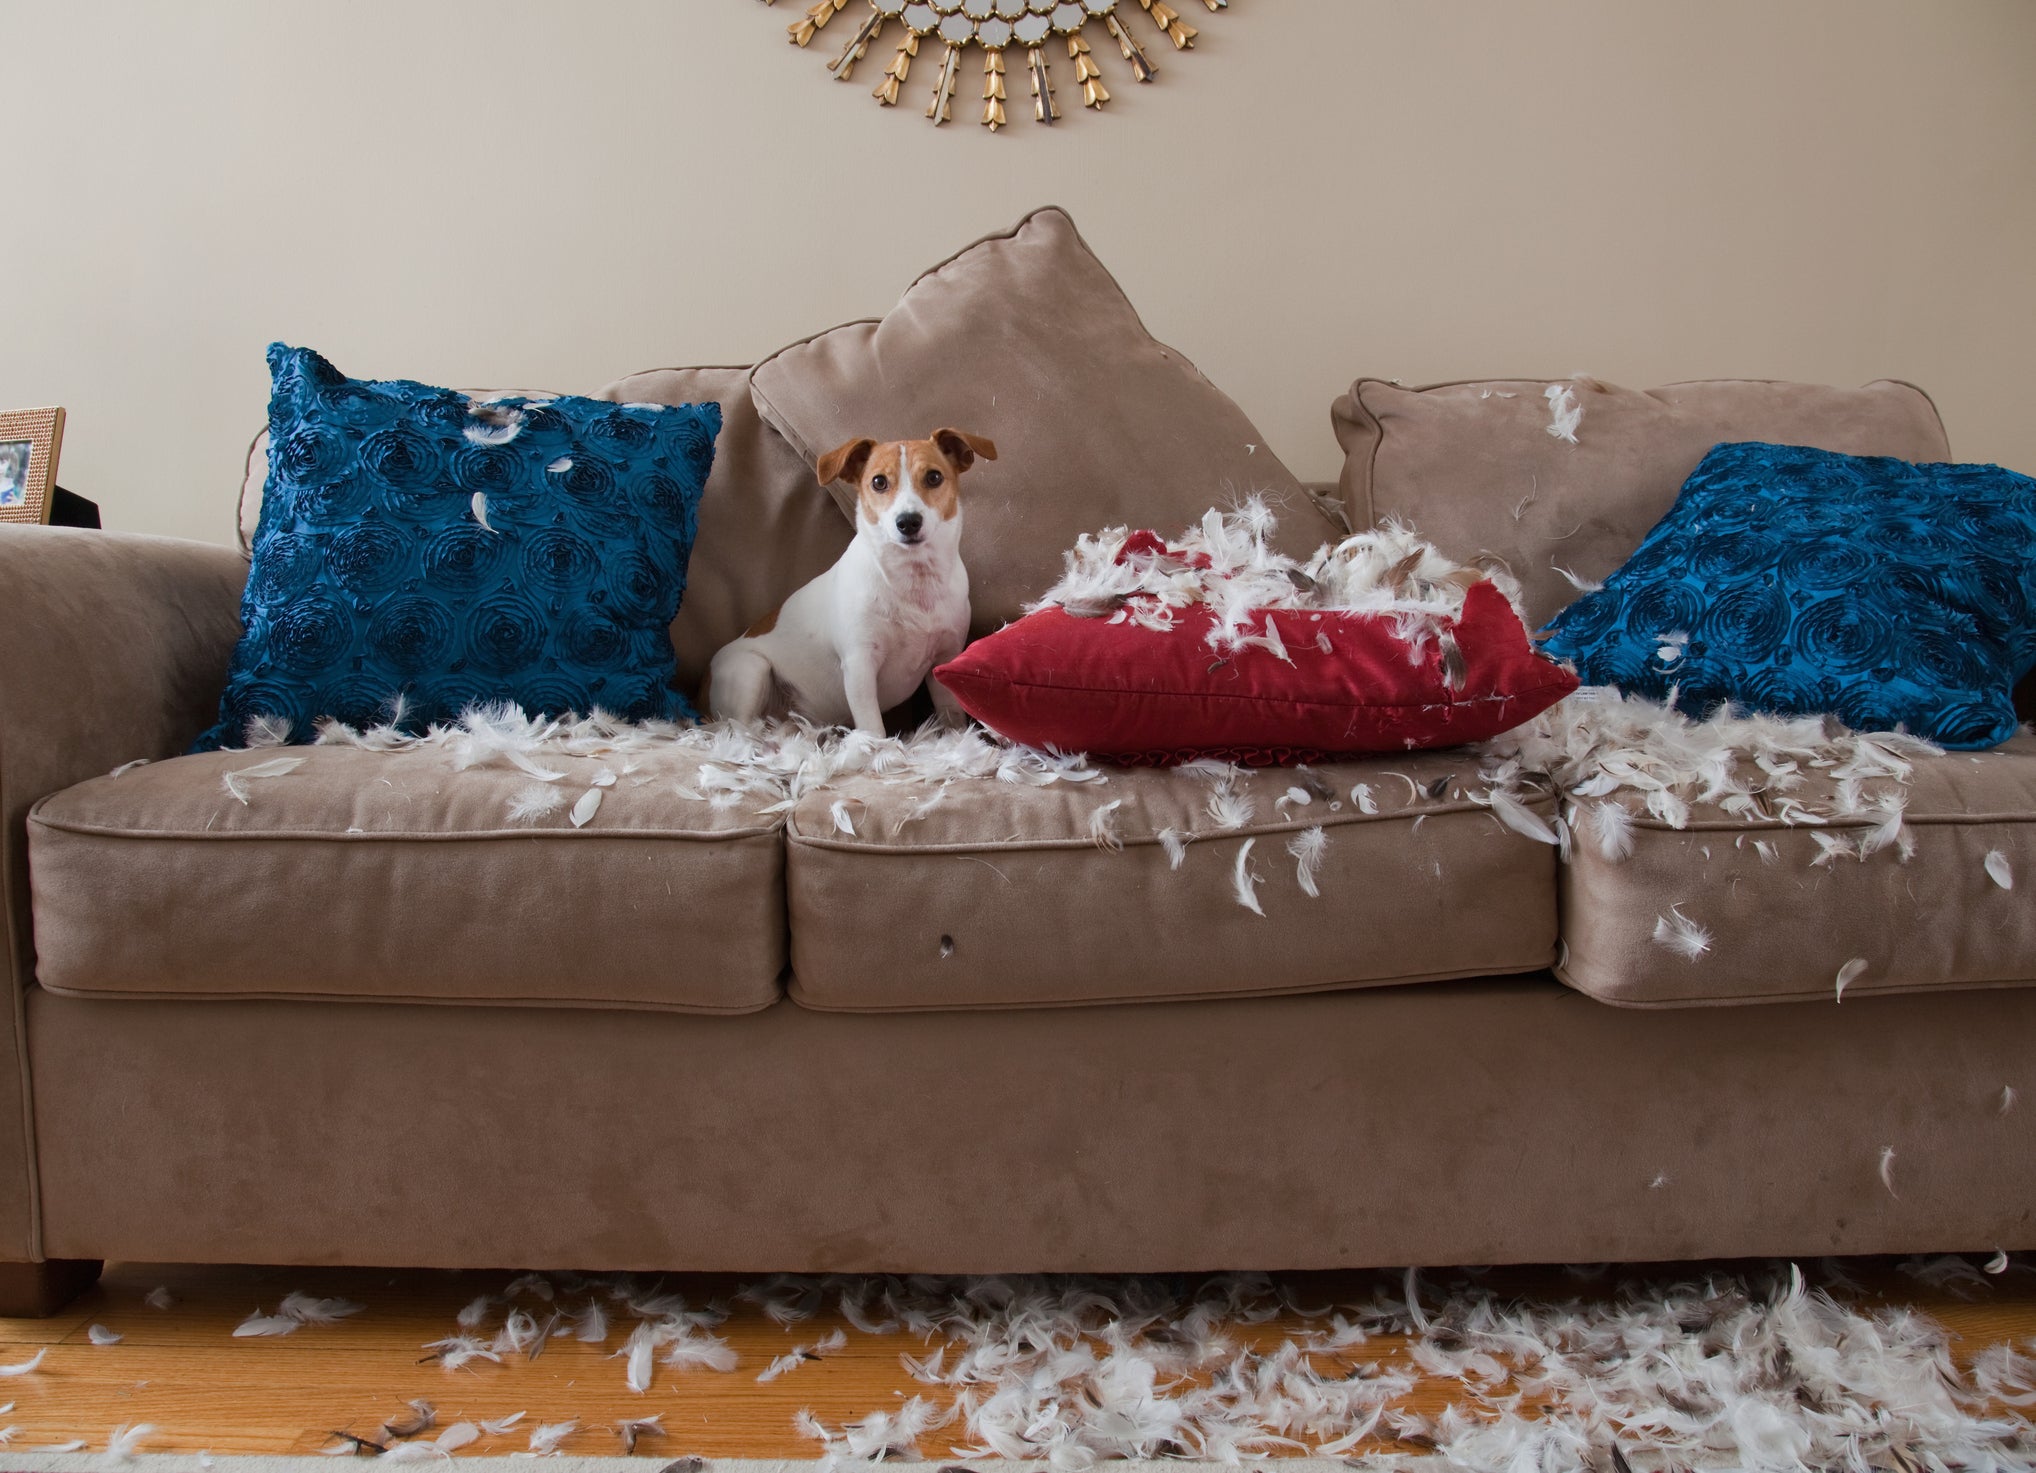 Jack Russel Terrier em cima do sofá com almofadas destruídas